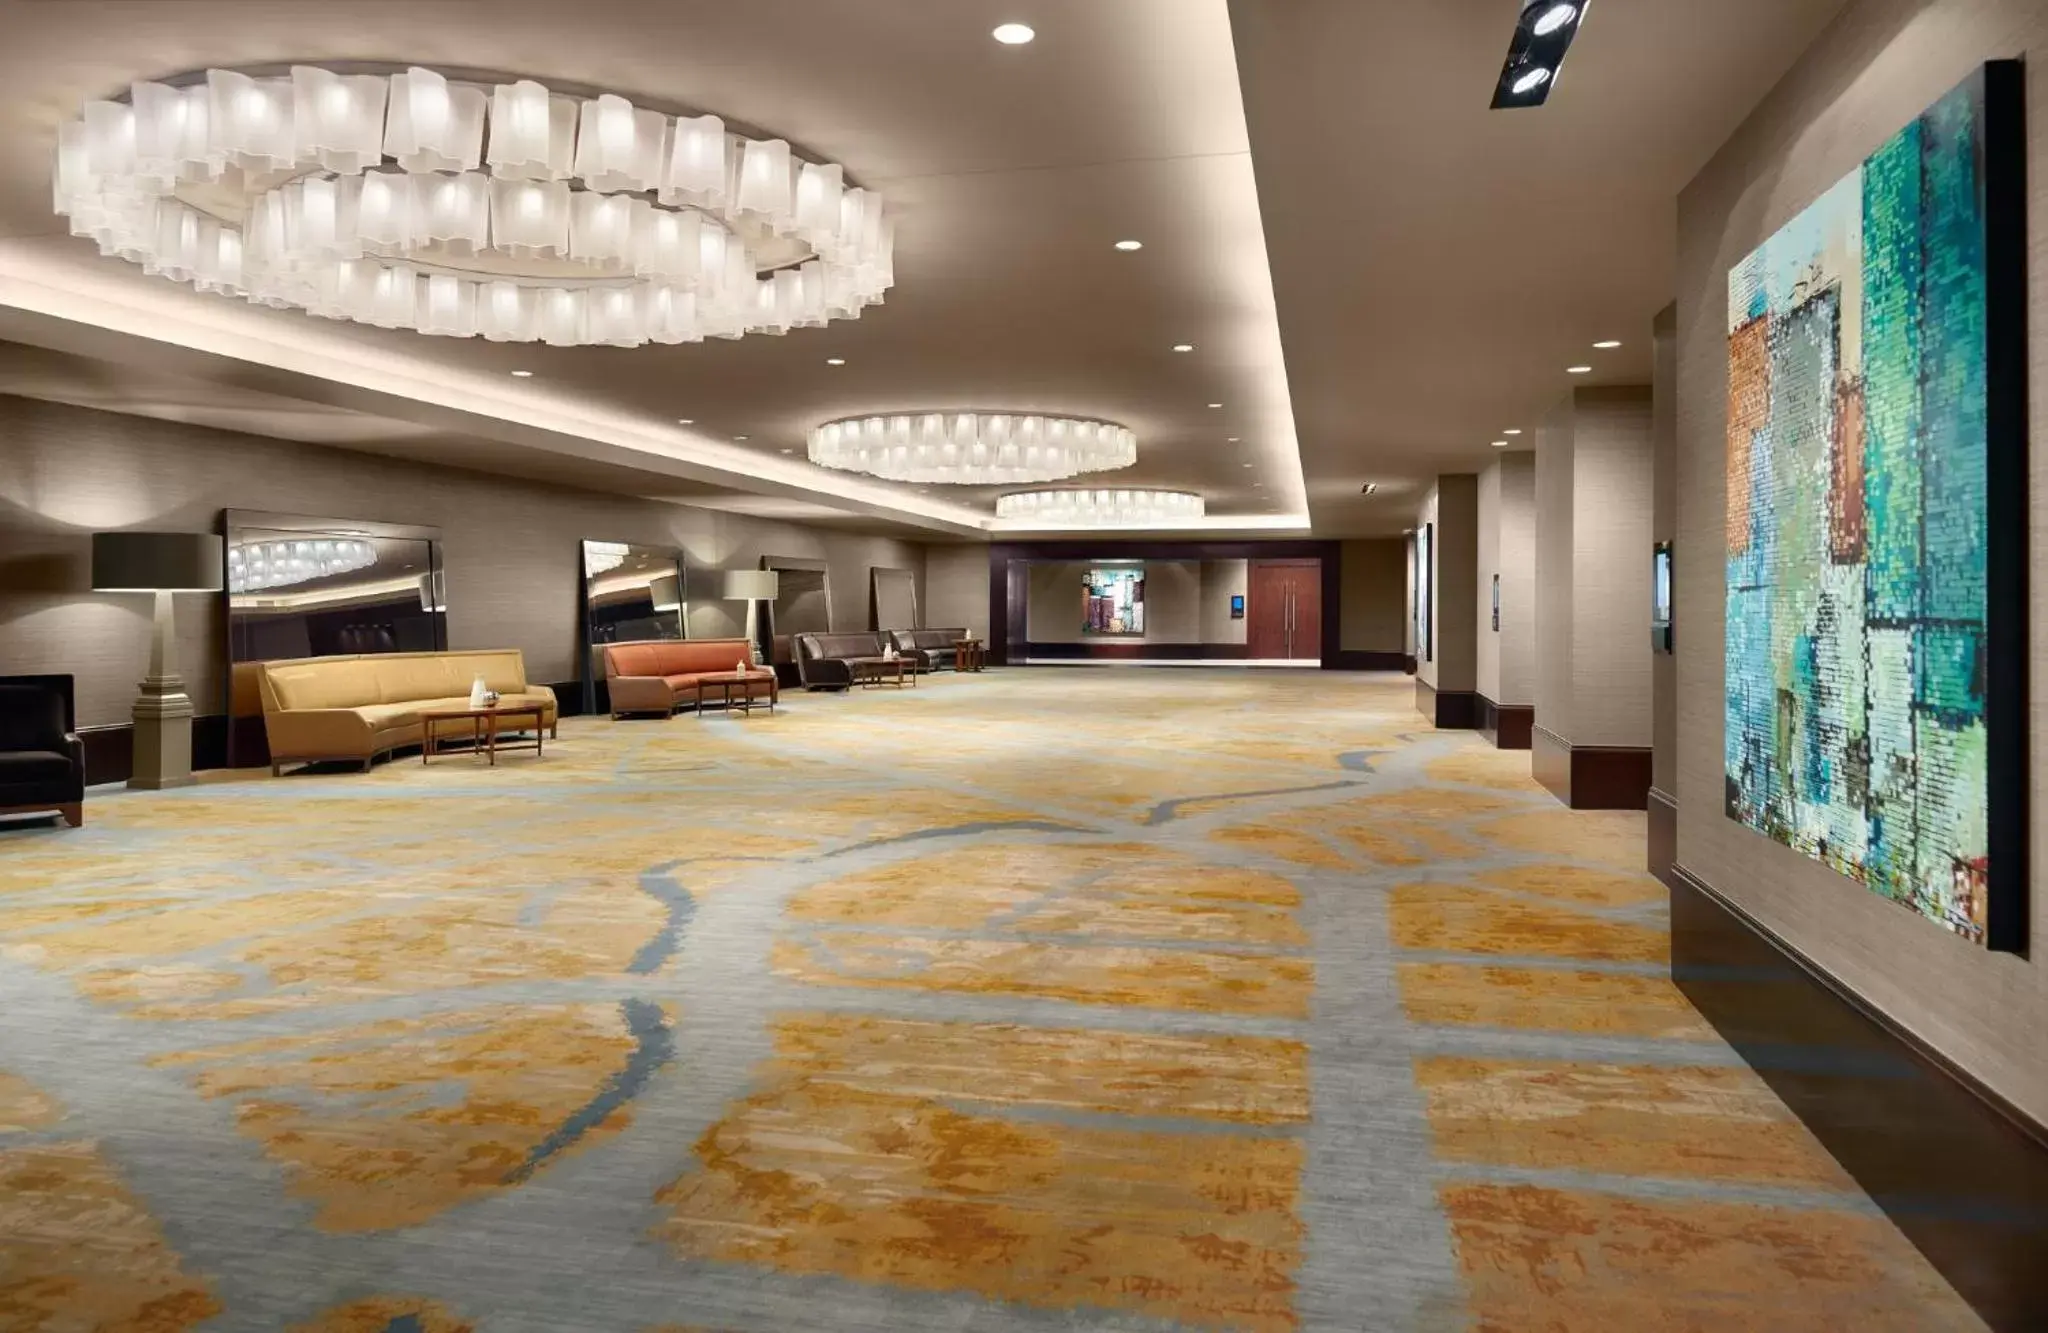 Lobby or reception, Lobby/Reception in Omni Dallas Hotel